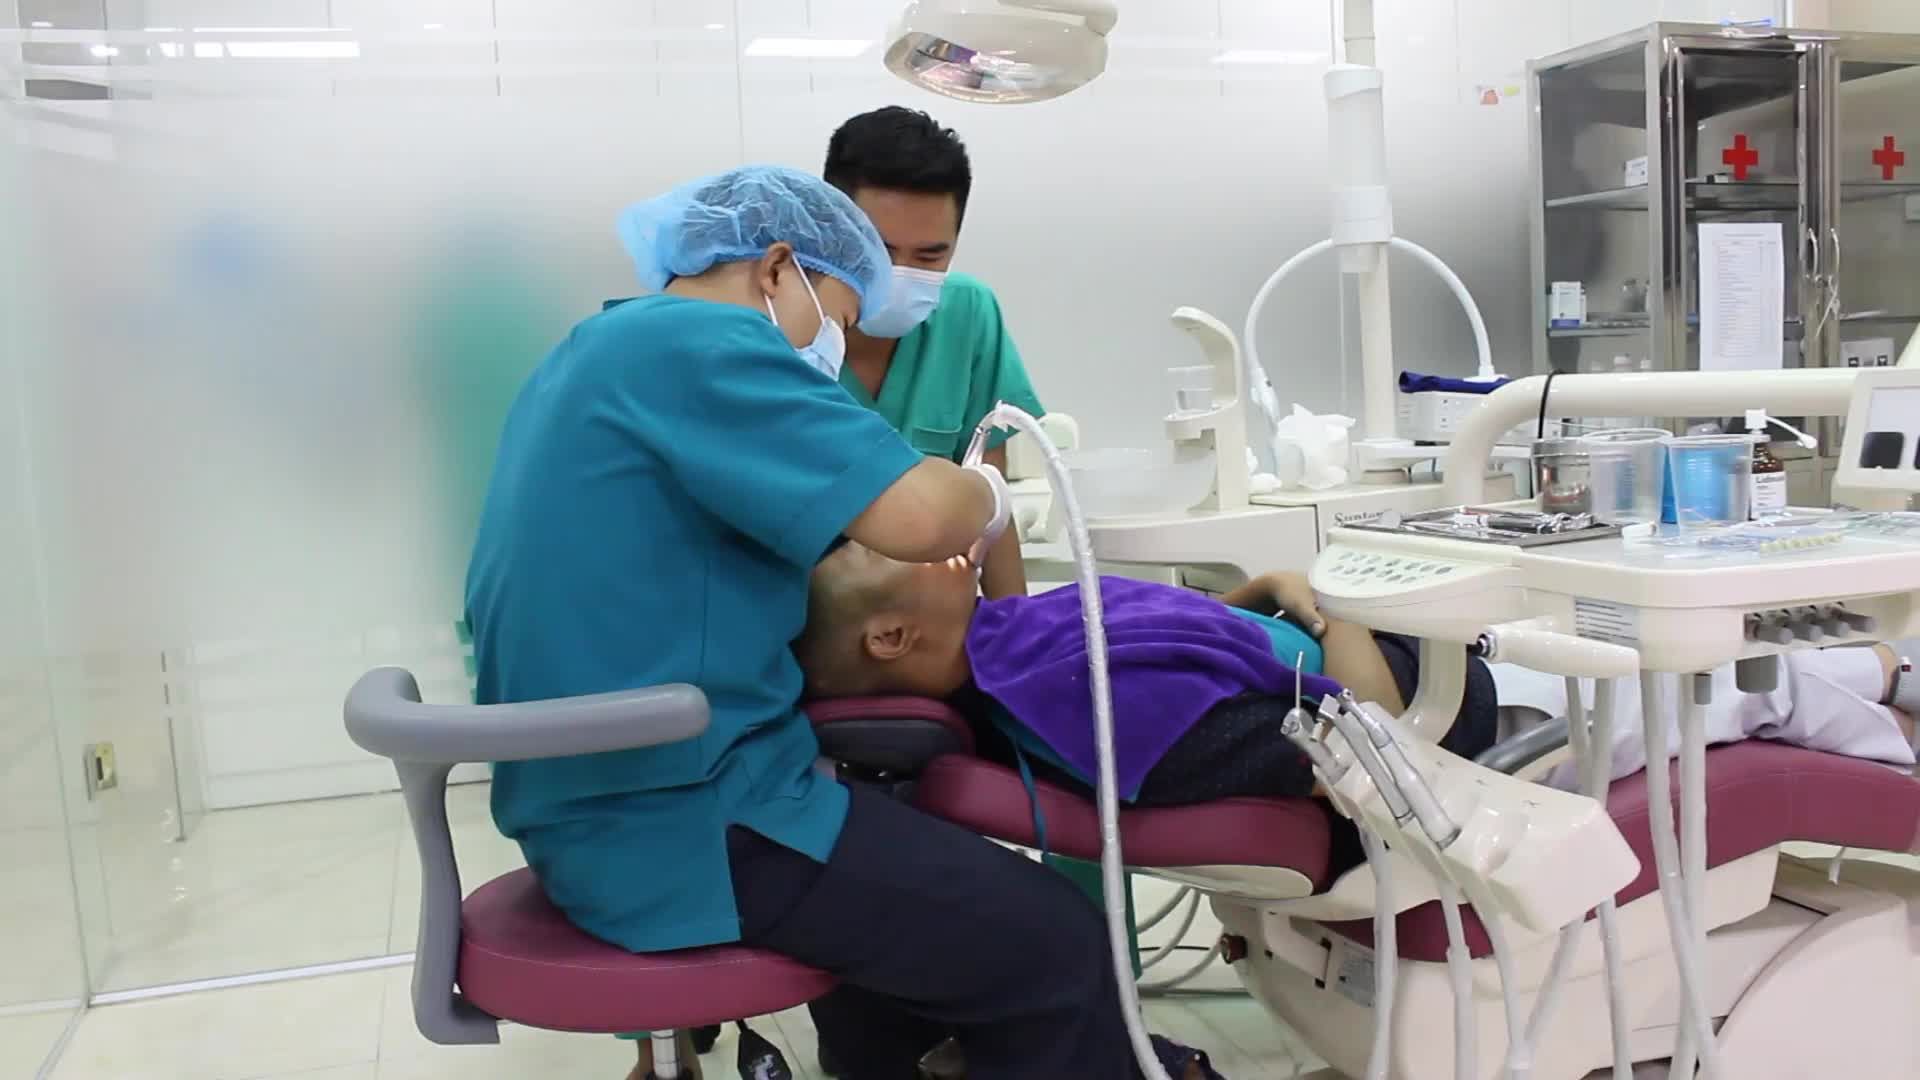 Quá trình tạo điểm bám cho case thẩm mỹ răng sứ Veneer Bio Fieldspathic cho bệnh nhân N. Q. N - 36 tuổi ở Hải Phòng